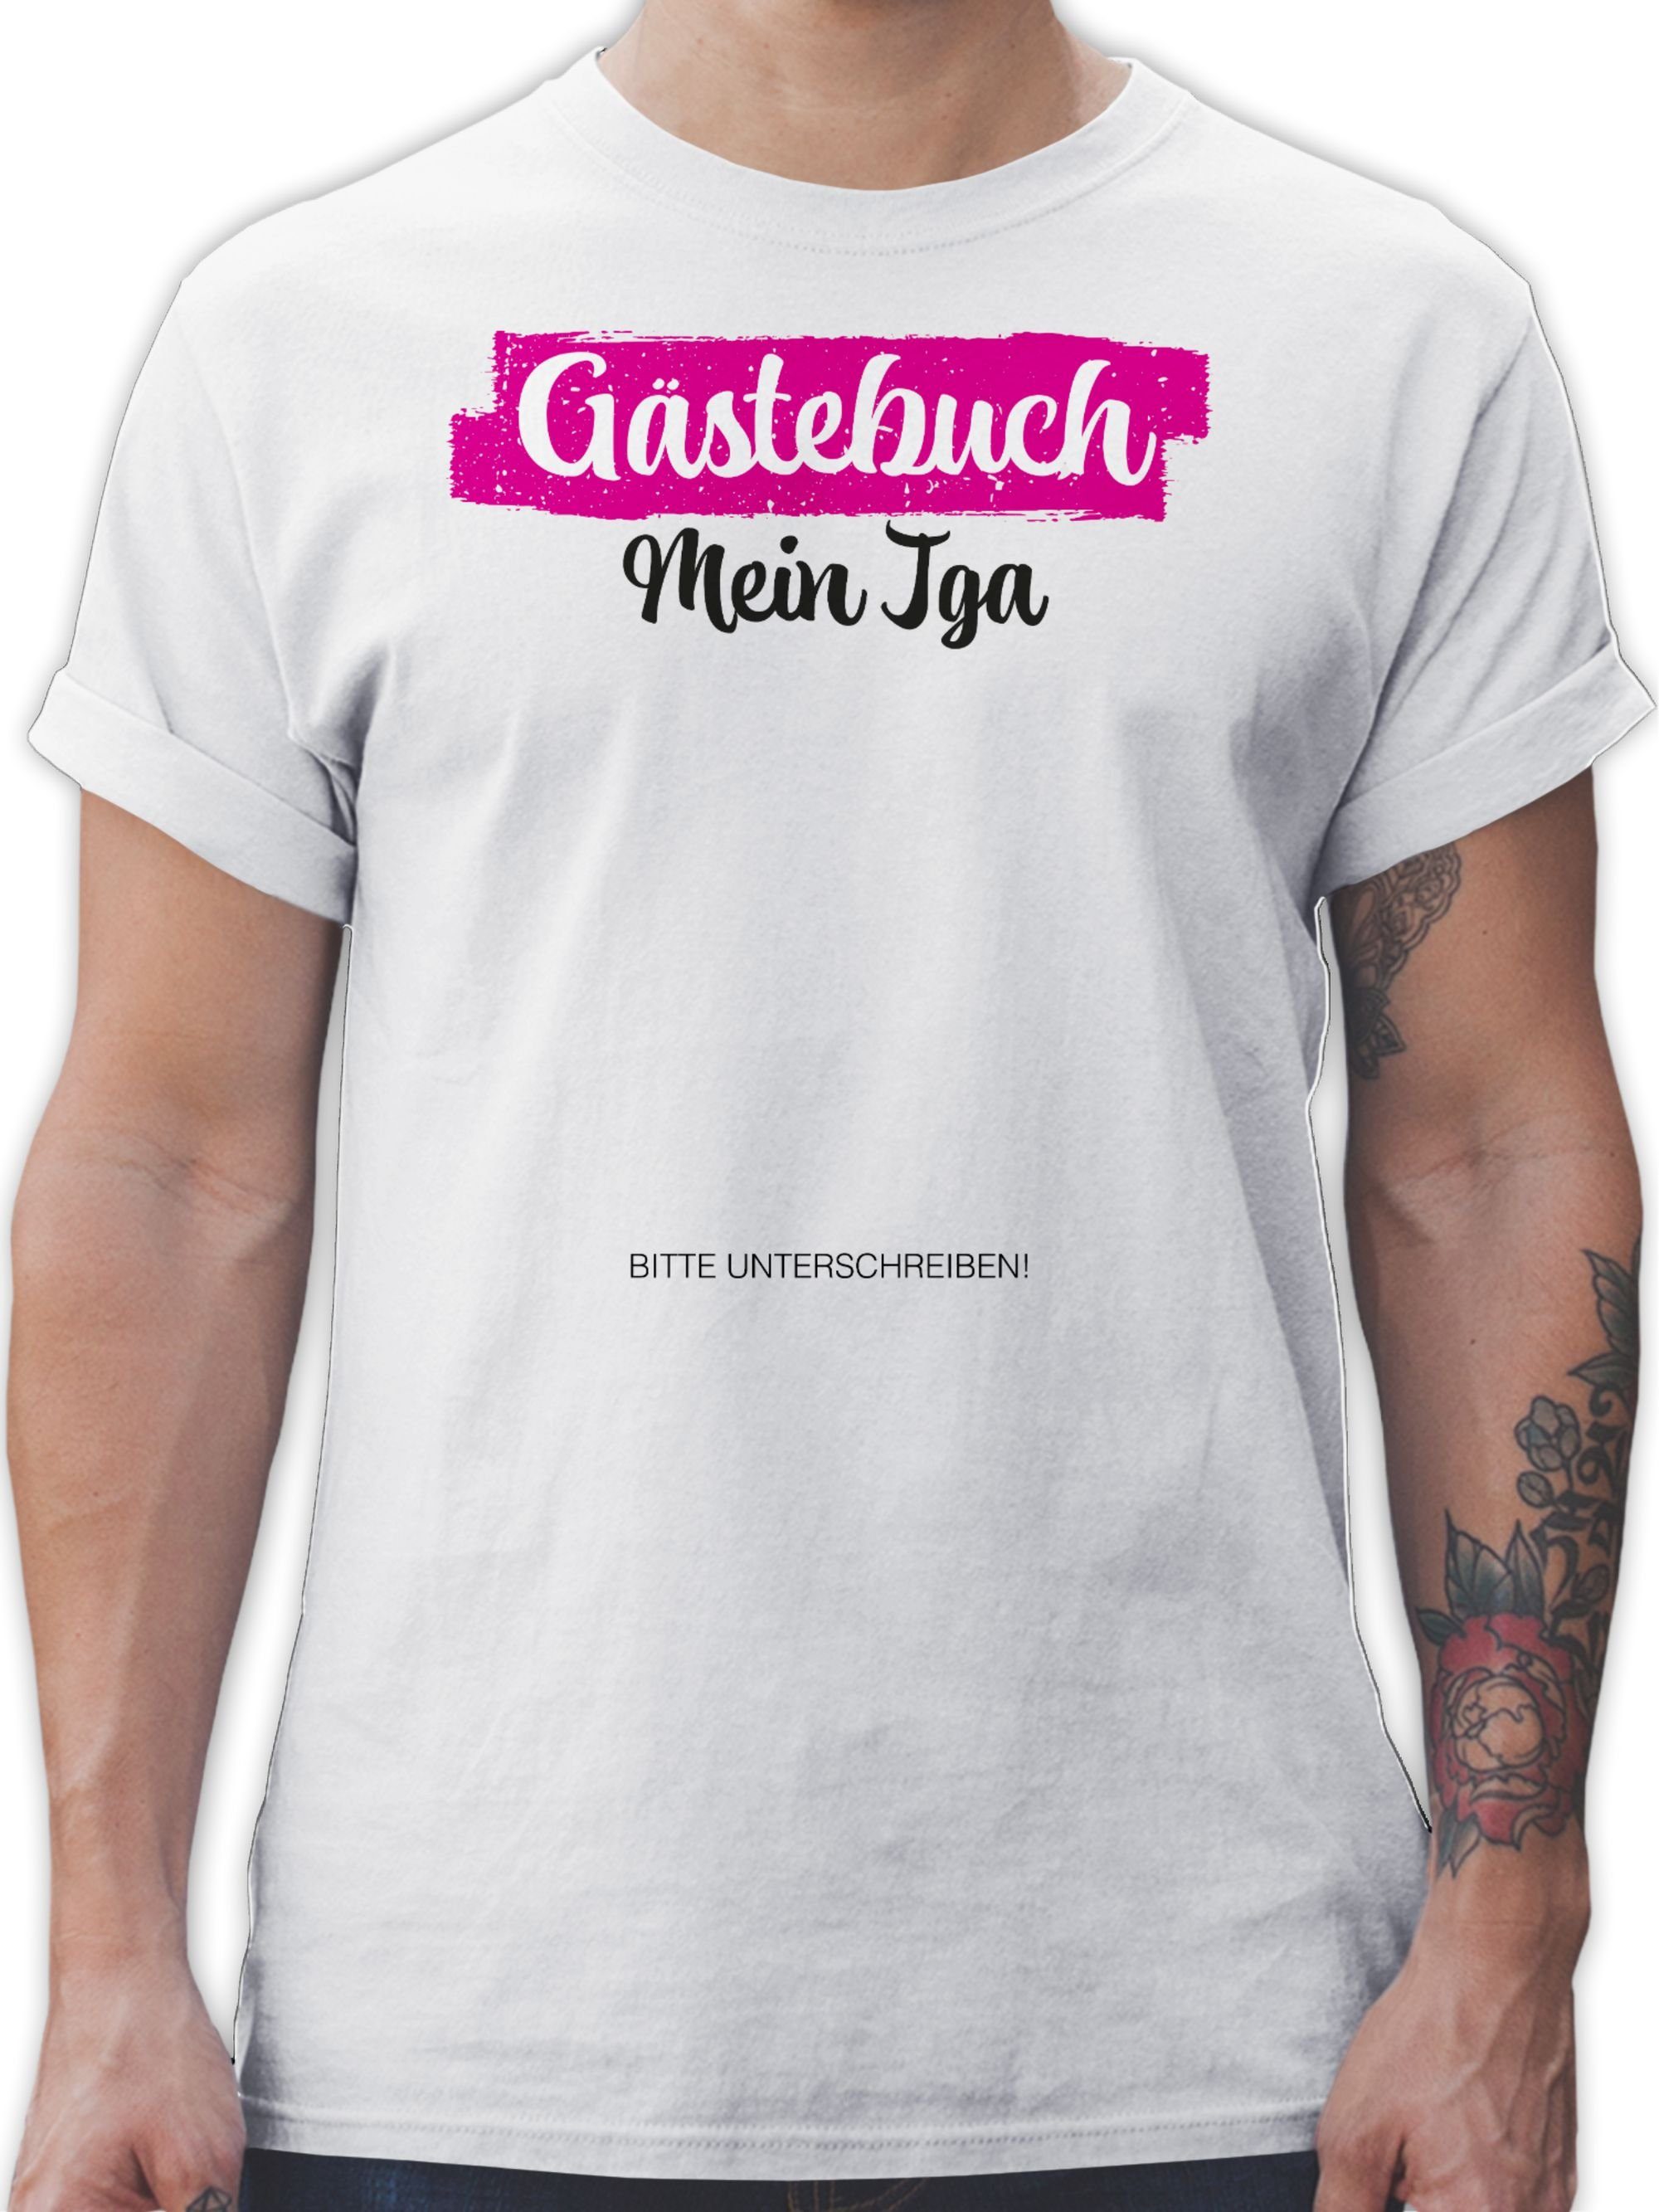 I Gästeliste Gästebuch Unterschreiben Männer JGA JGA 01 Shirtracer Weiß T-Shirt